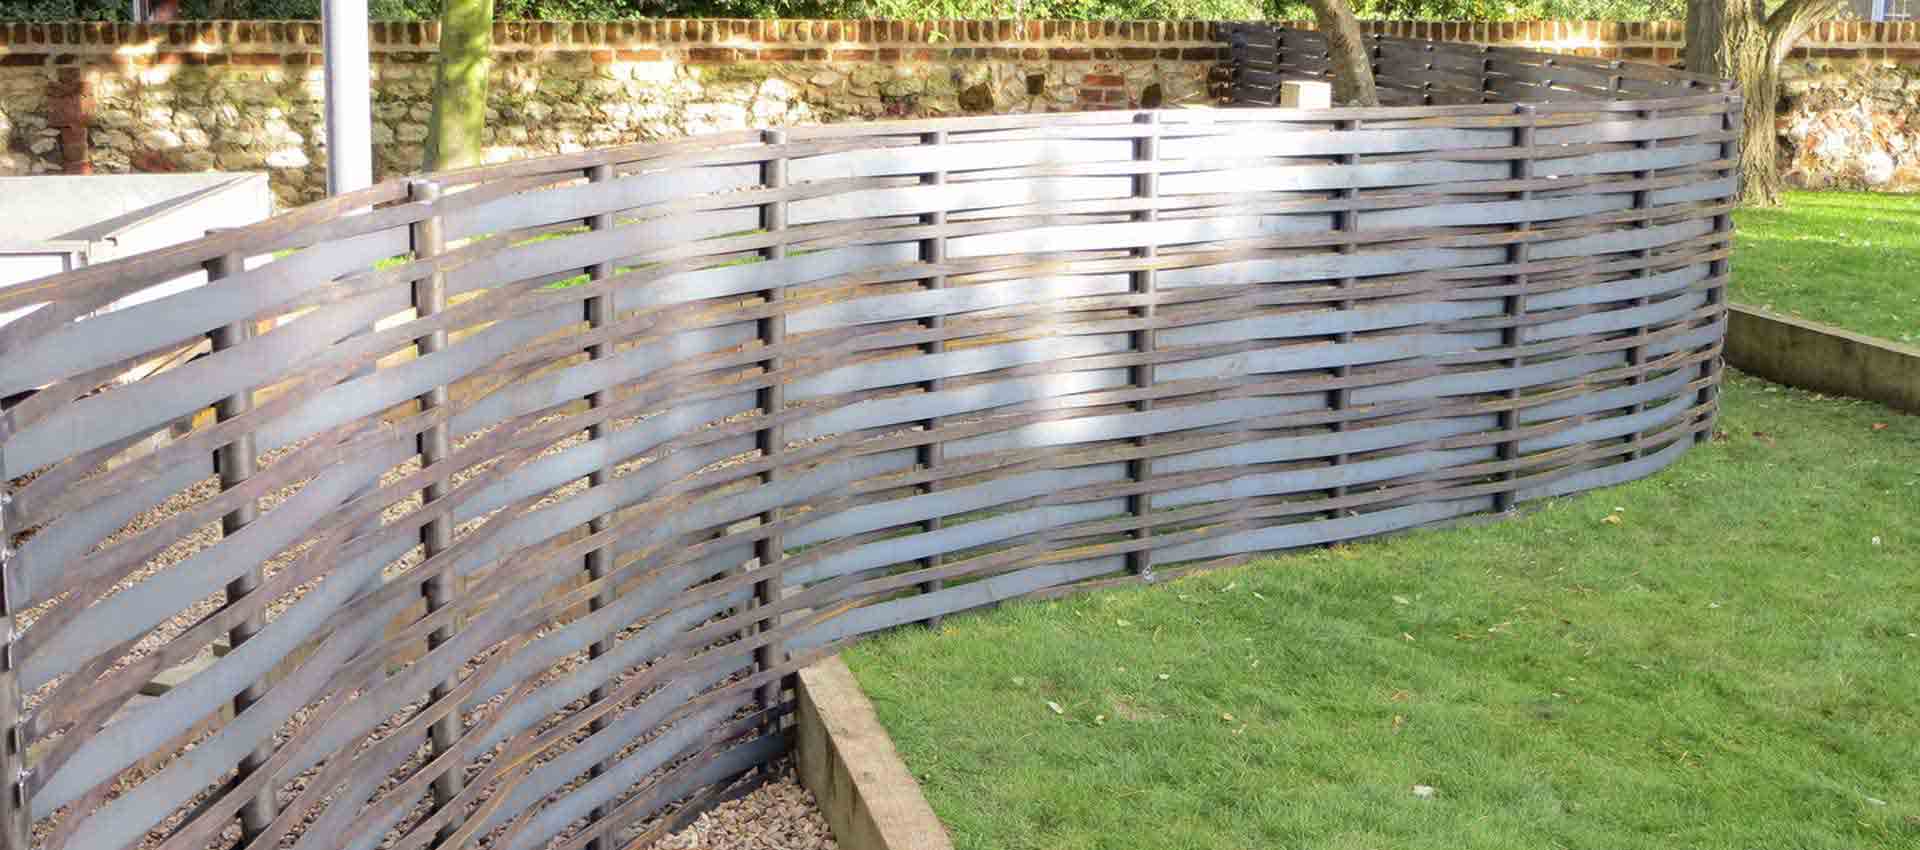 bespoke woven steel fencing